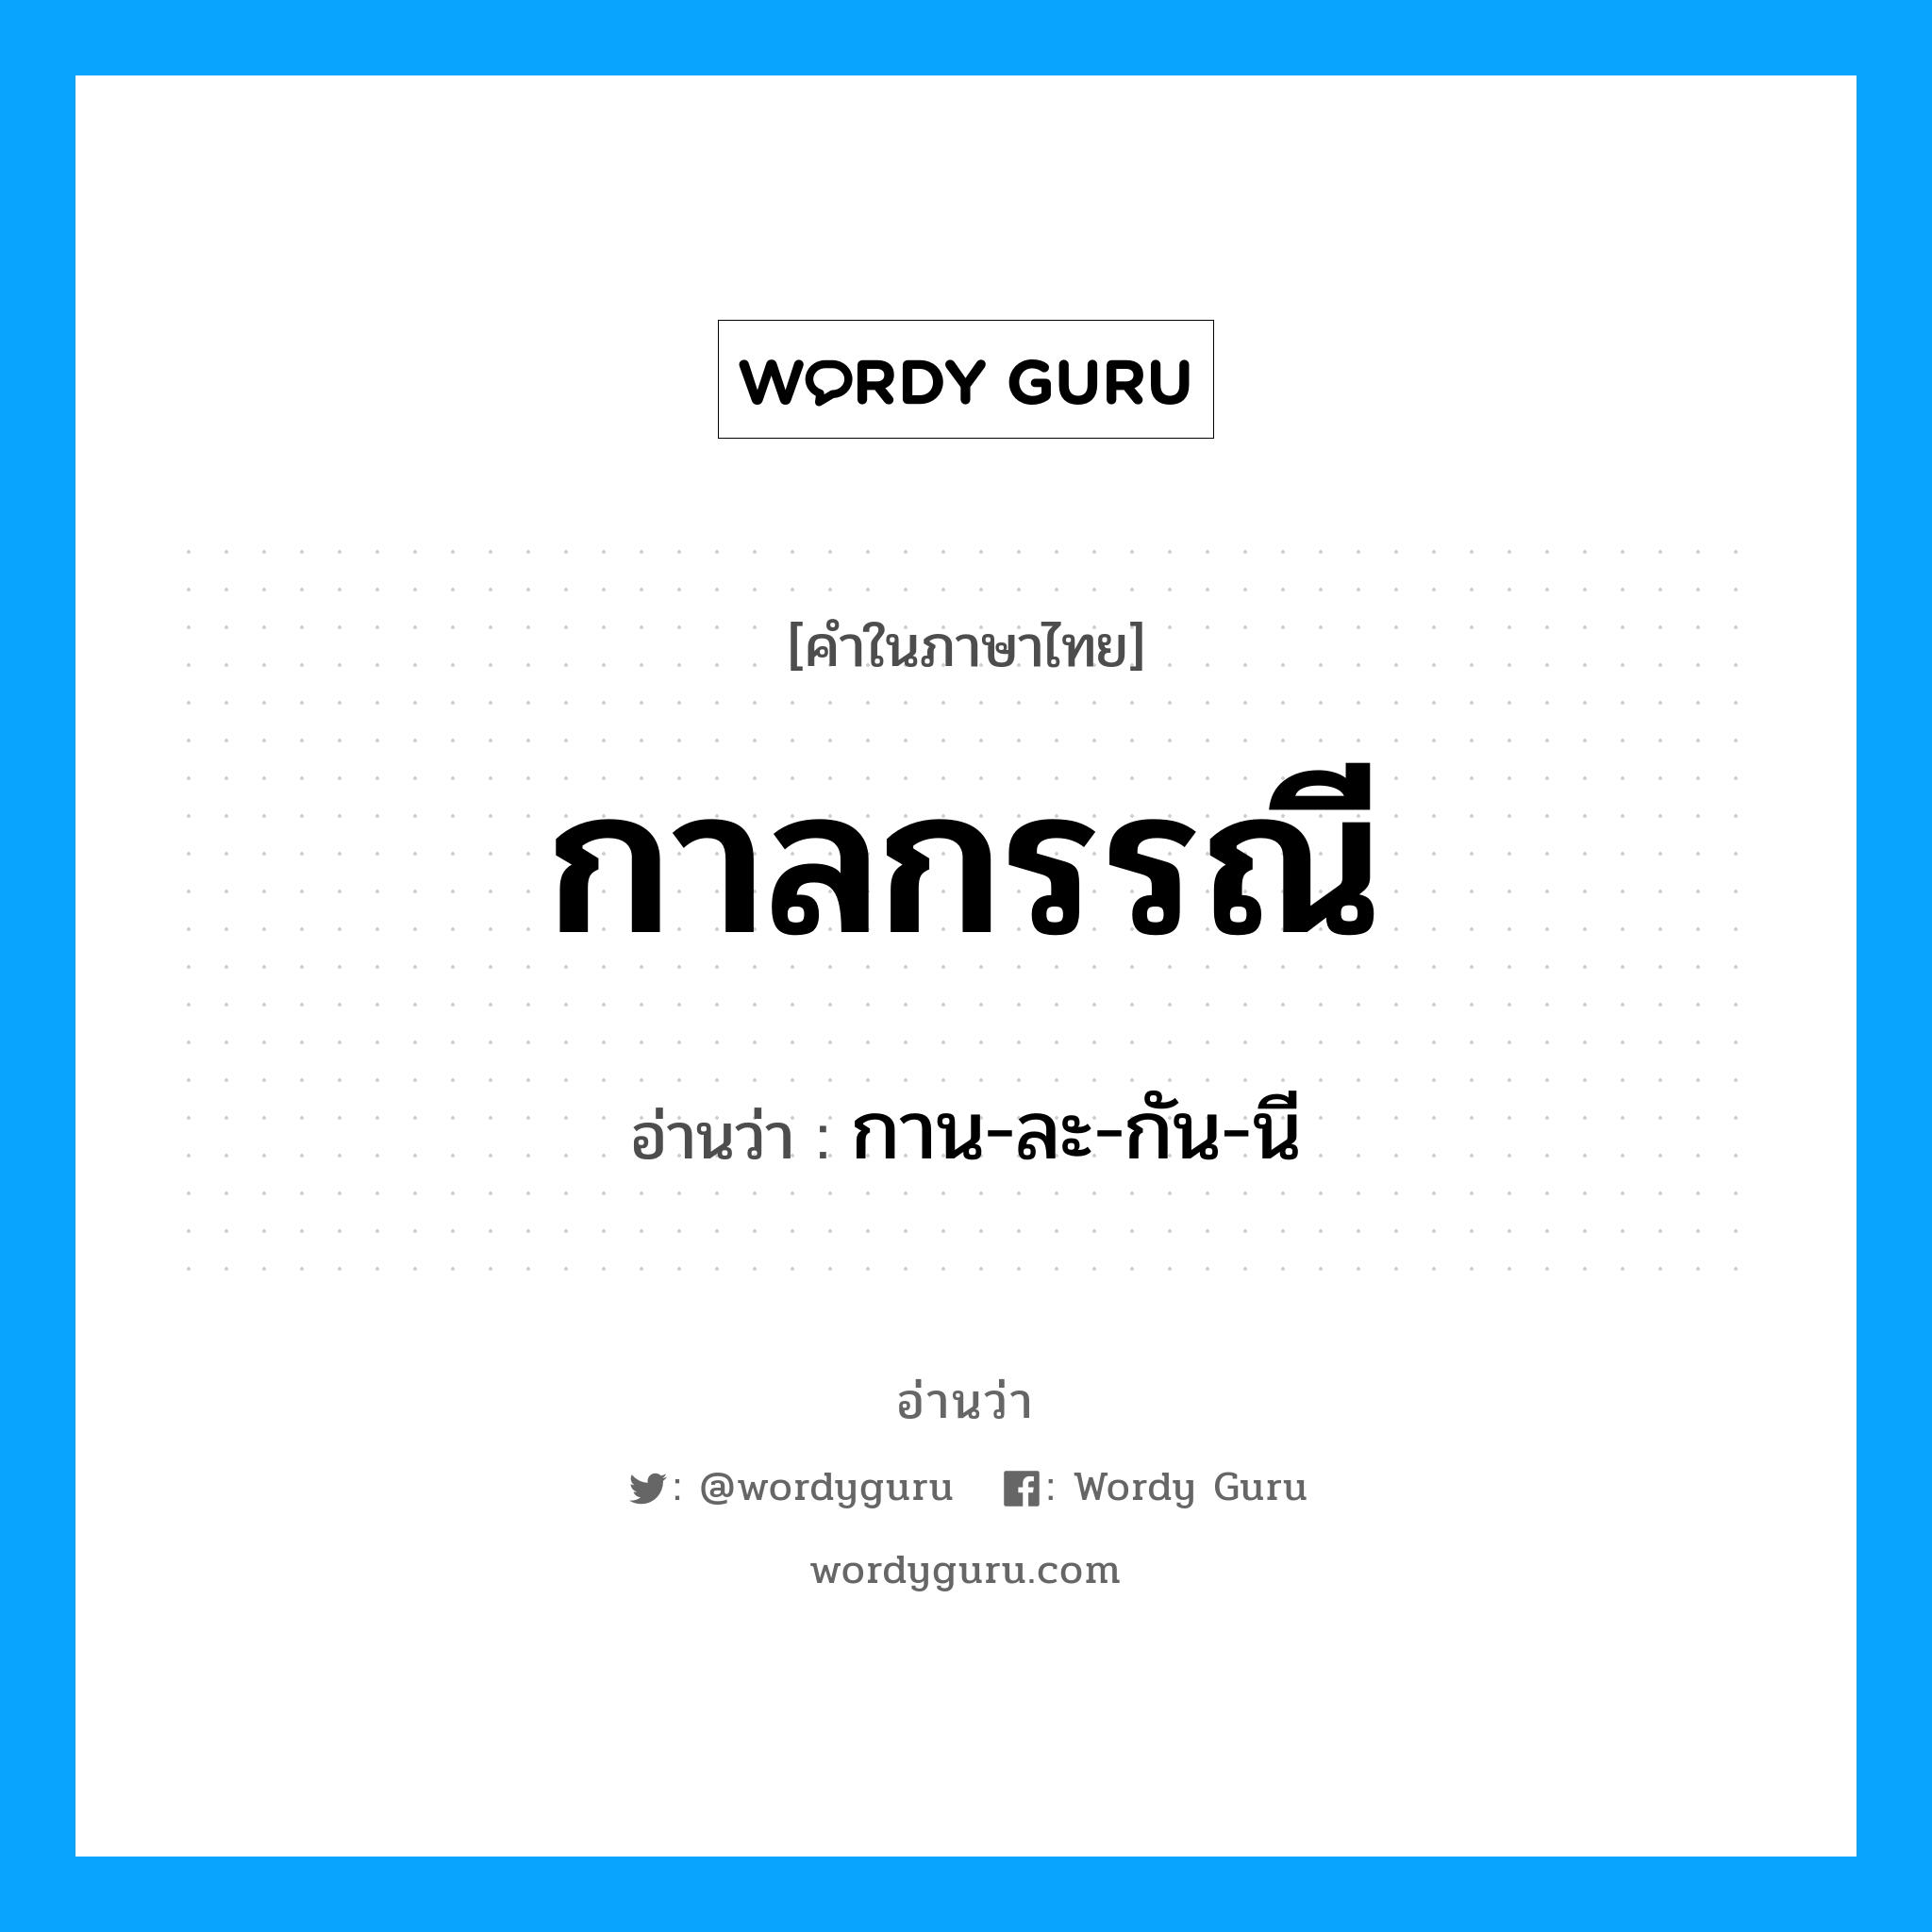 กาน-ละ-กัน-นี เป็นคำอ่านของคำไหน?, คำในภาษาไทย กาน-ละ-กัน-นี อ่านว่า กาลกรรณี